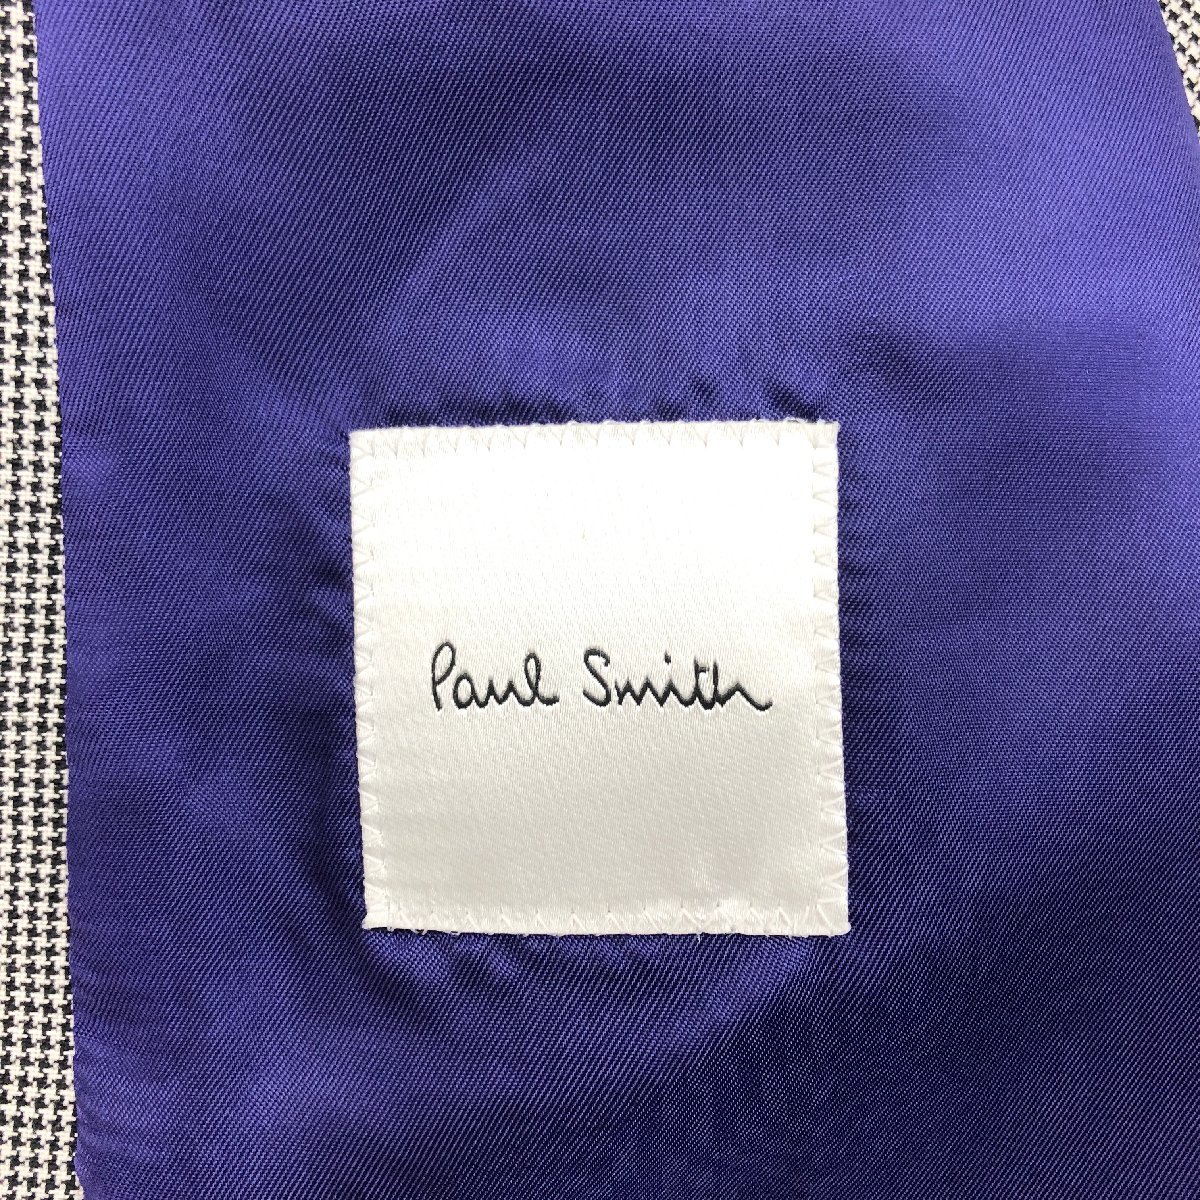 ◆【古着】Paul Smith ポールスミス サンプル品 スーツ ジャケット パンツ 上下 セットアップ 2B 千鳥格子 L 黒 白 メンズ 0.86㎏_画像8